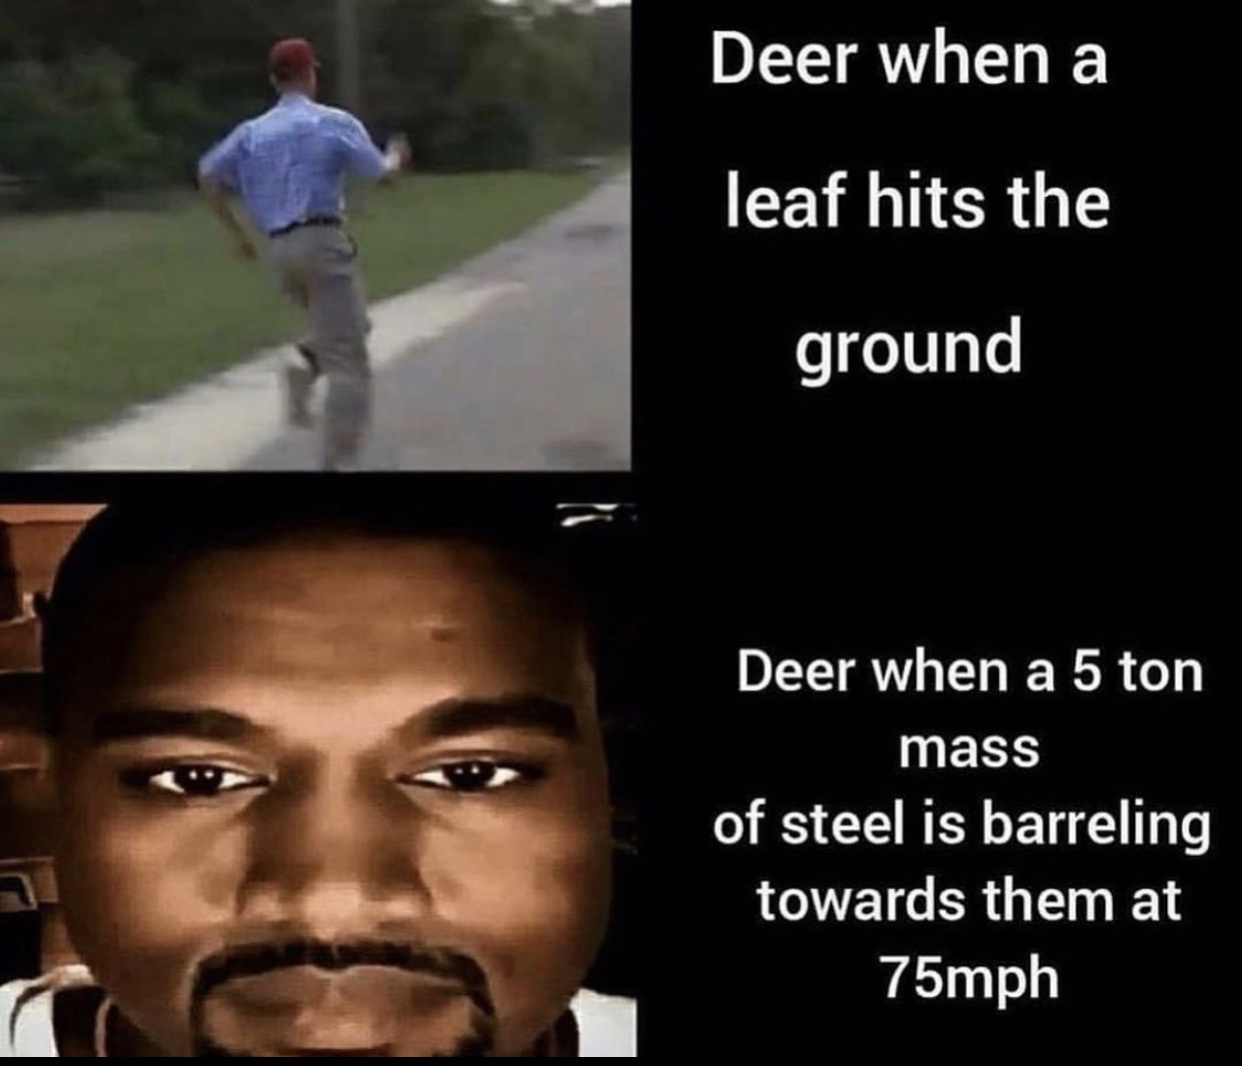 deers are dumb I’m am smarterer - meme